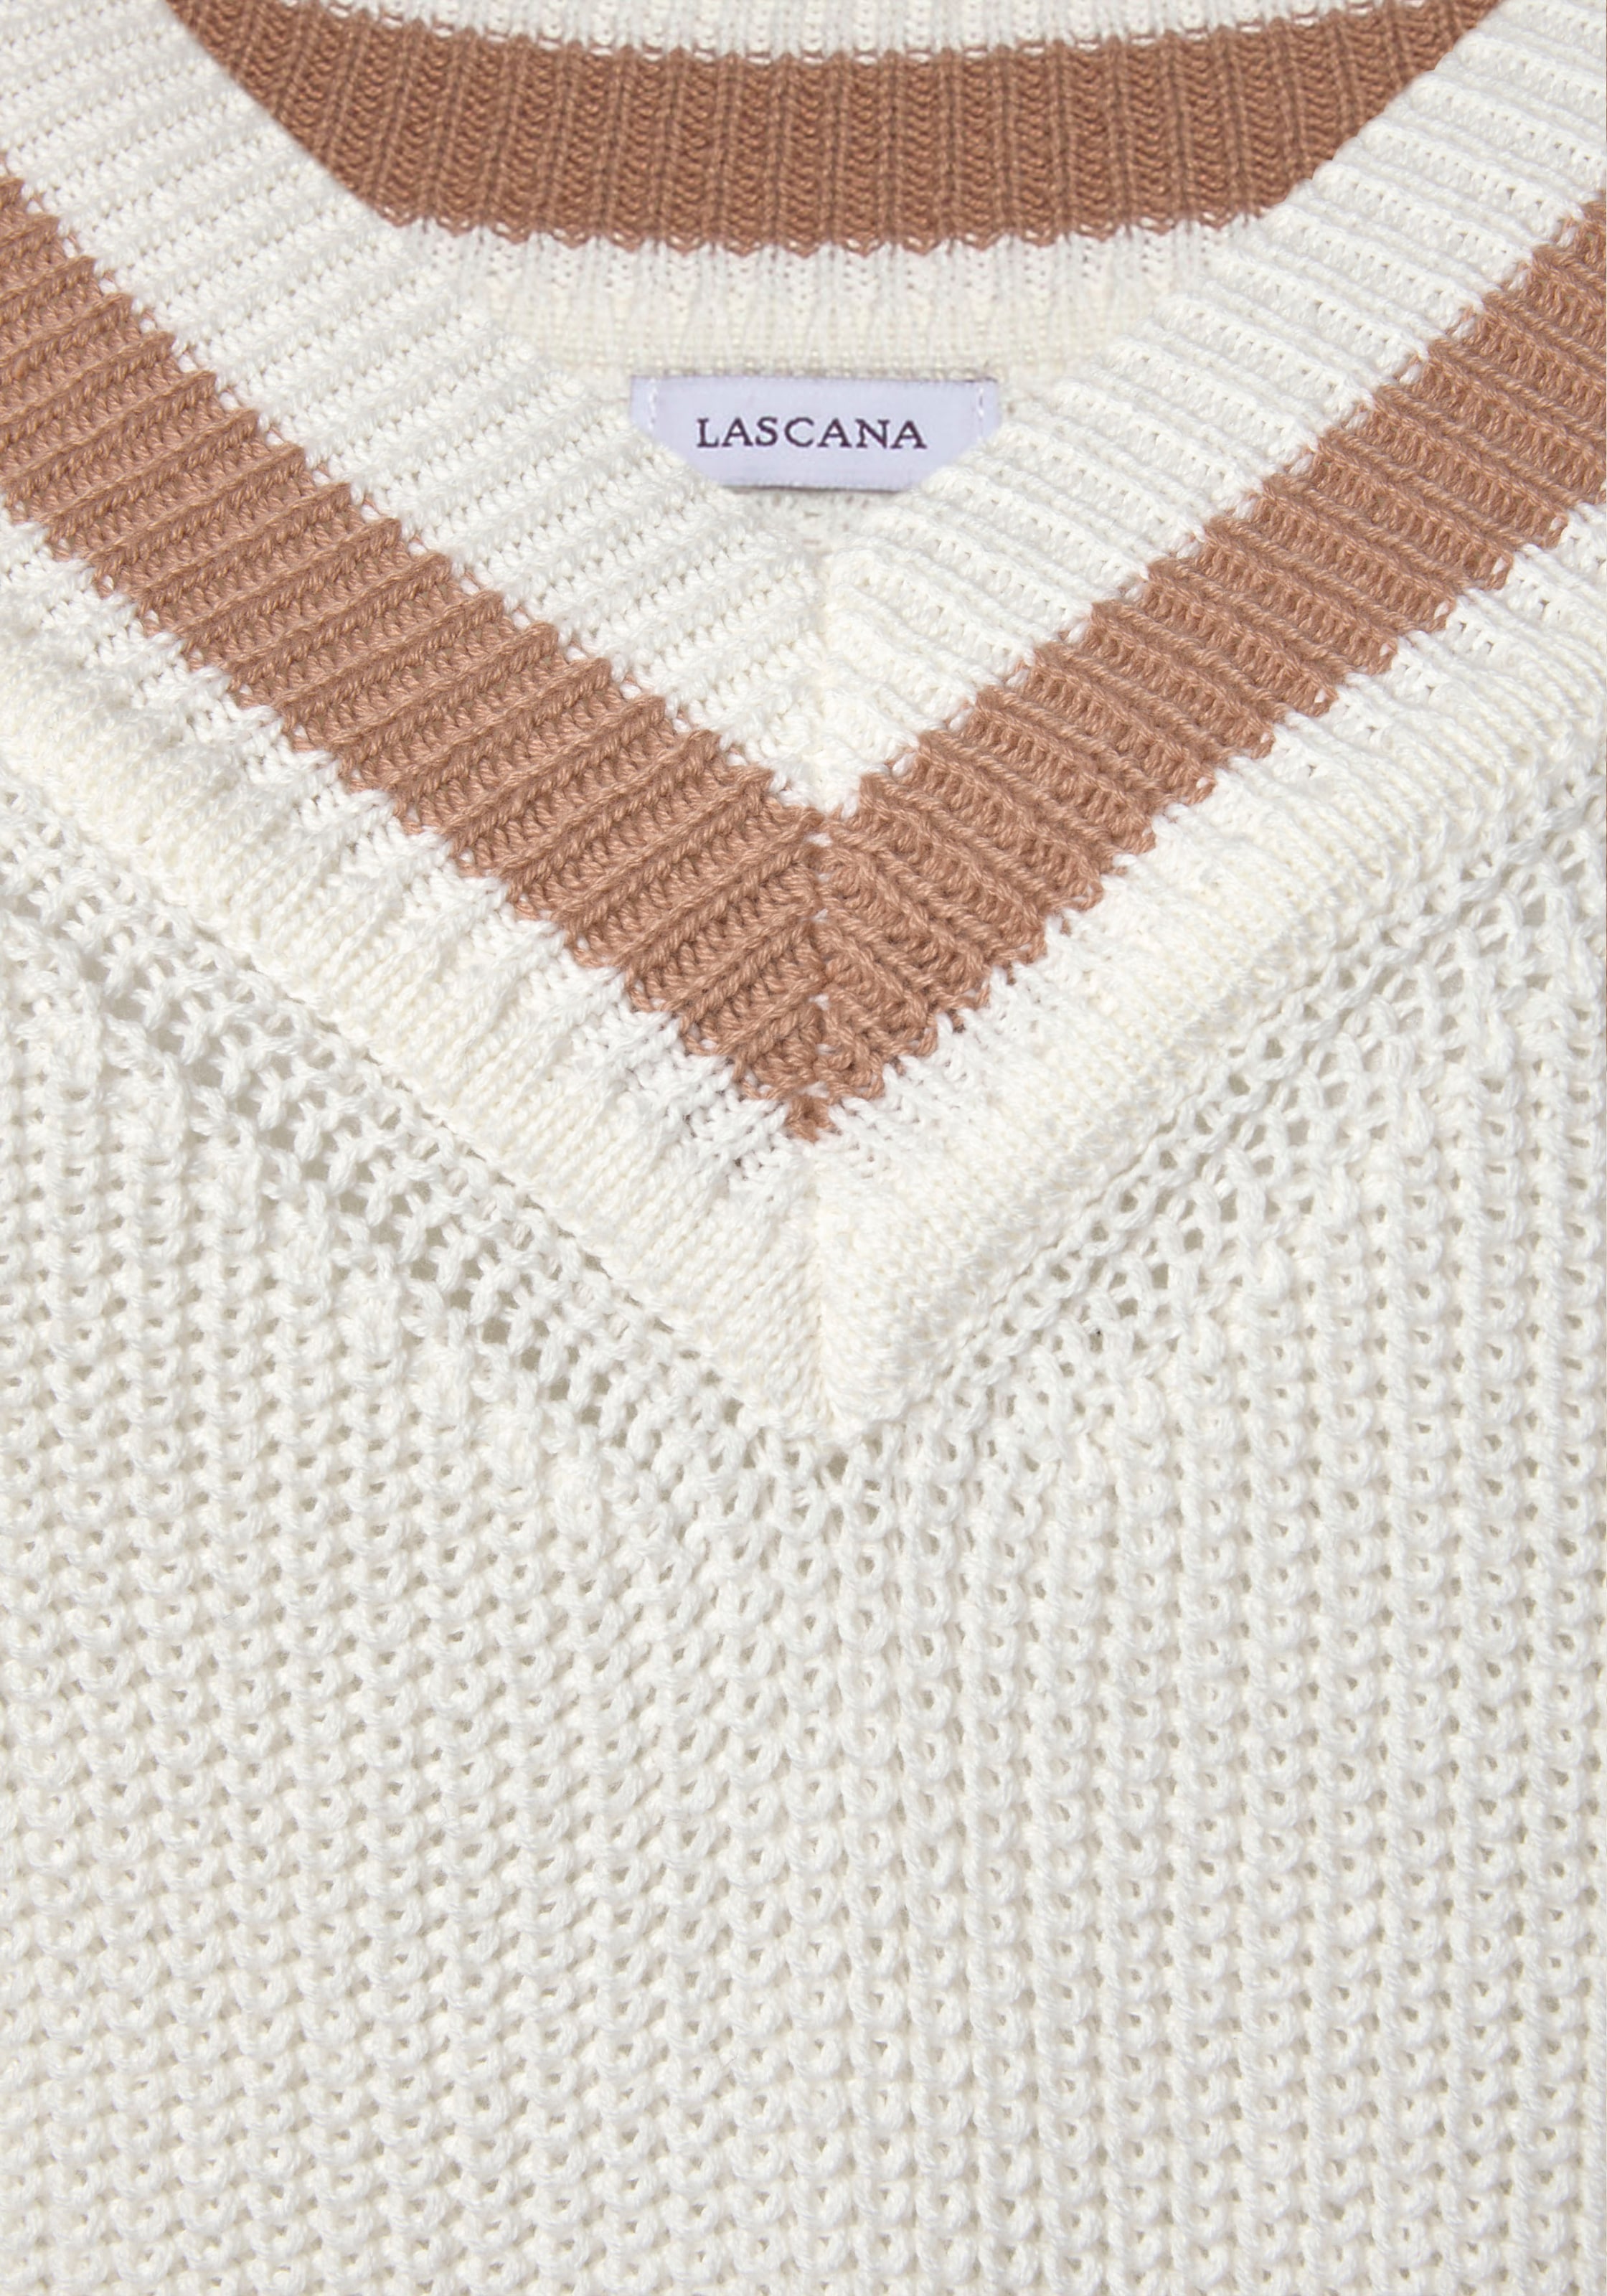 LASCANA V-Ausschnitt-Pullover, mit Streifen-Details, weicher Strickpullover, casual-chic